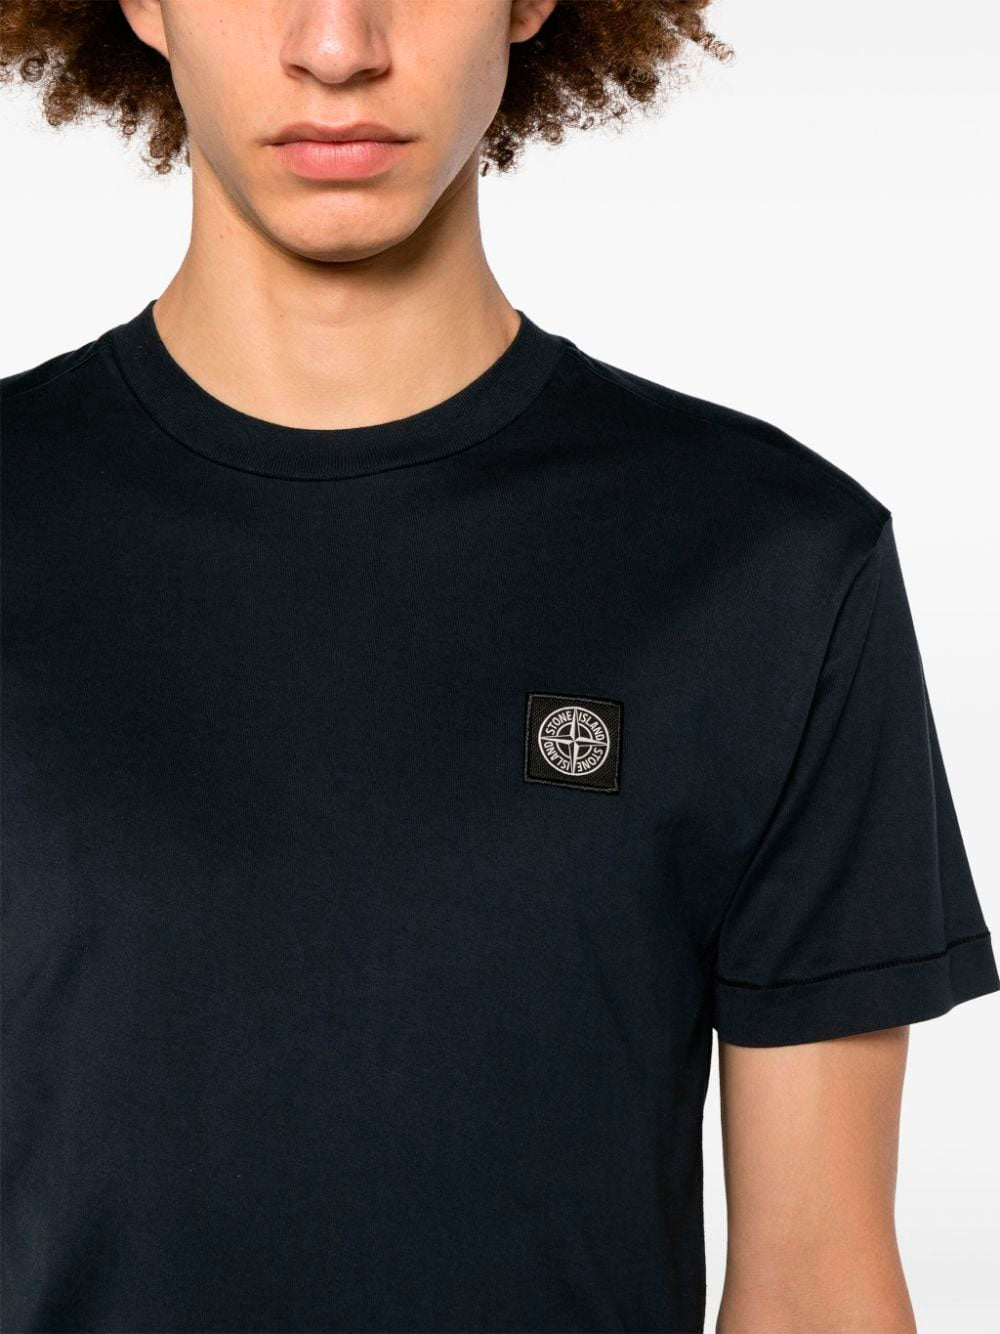 Compass-patch  T-shirt